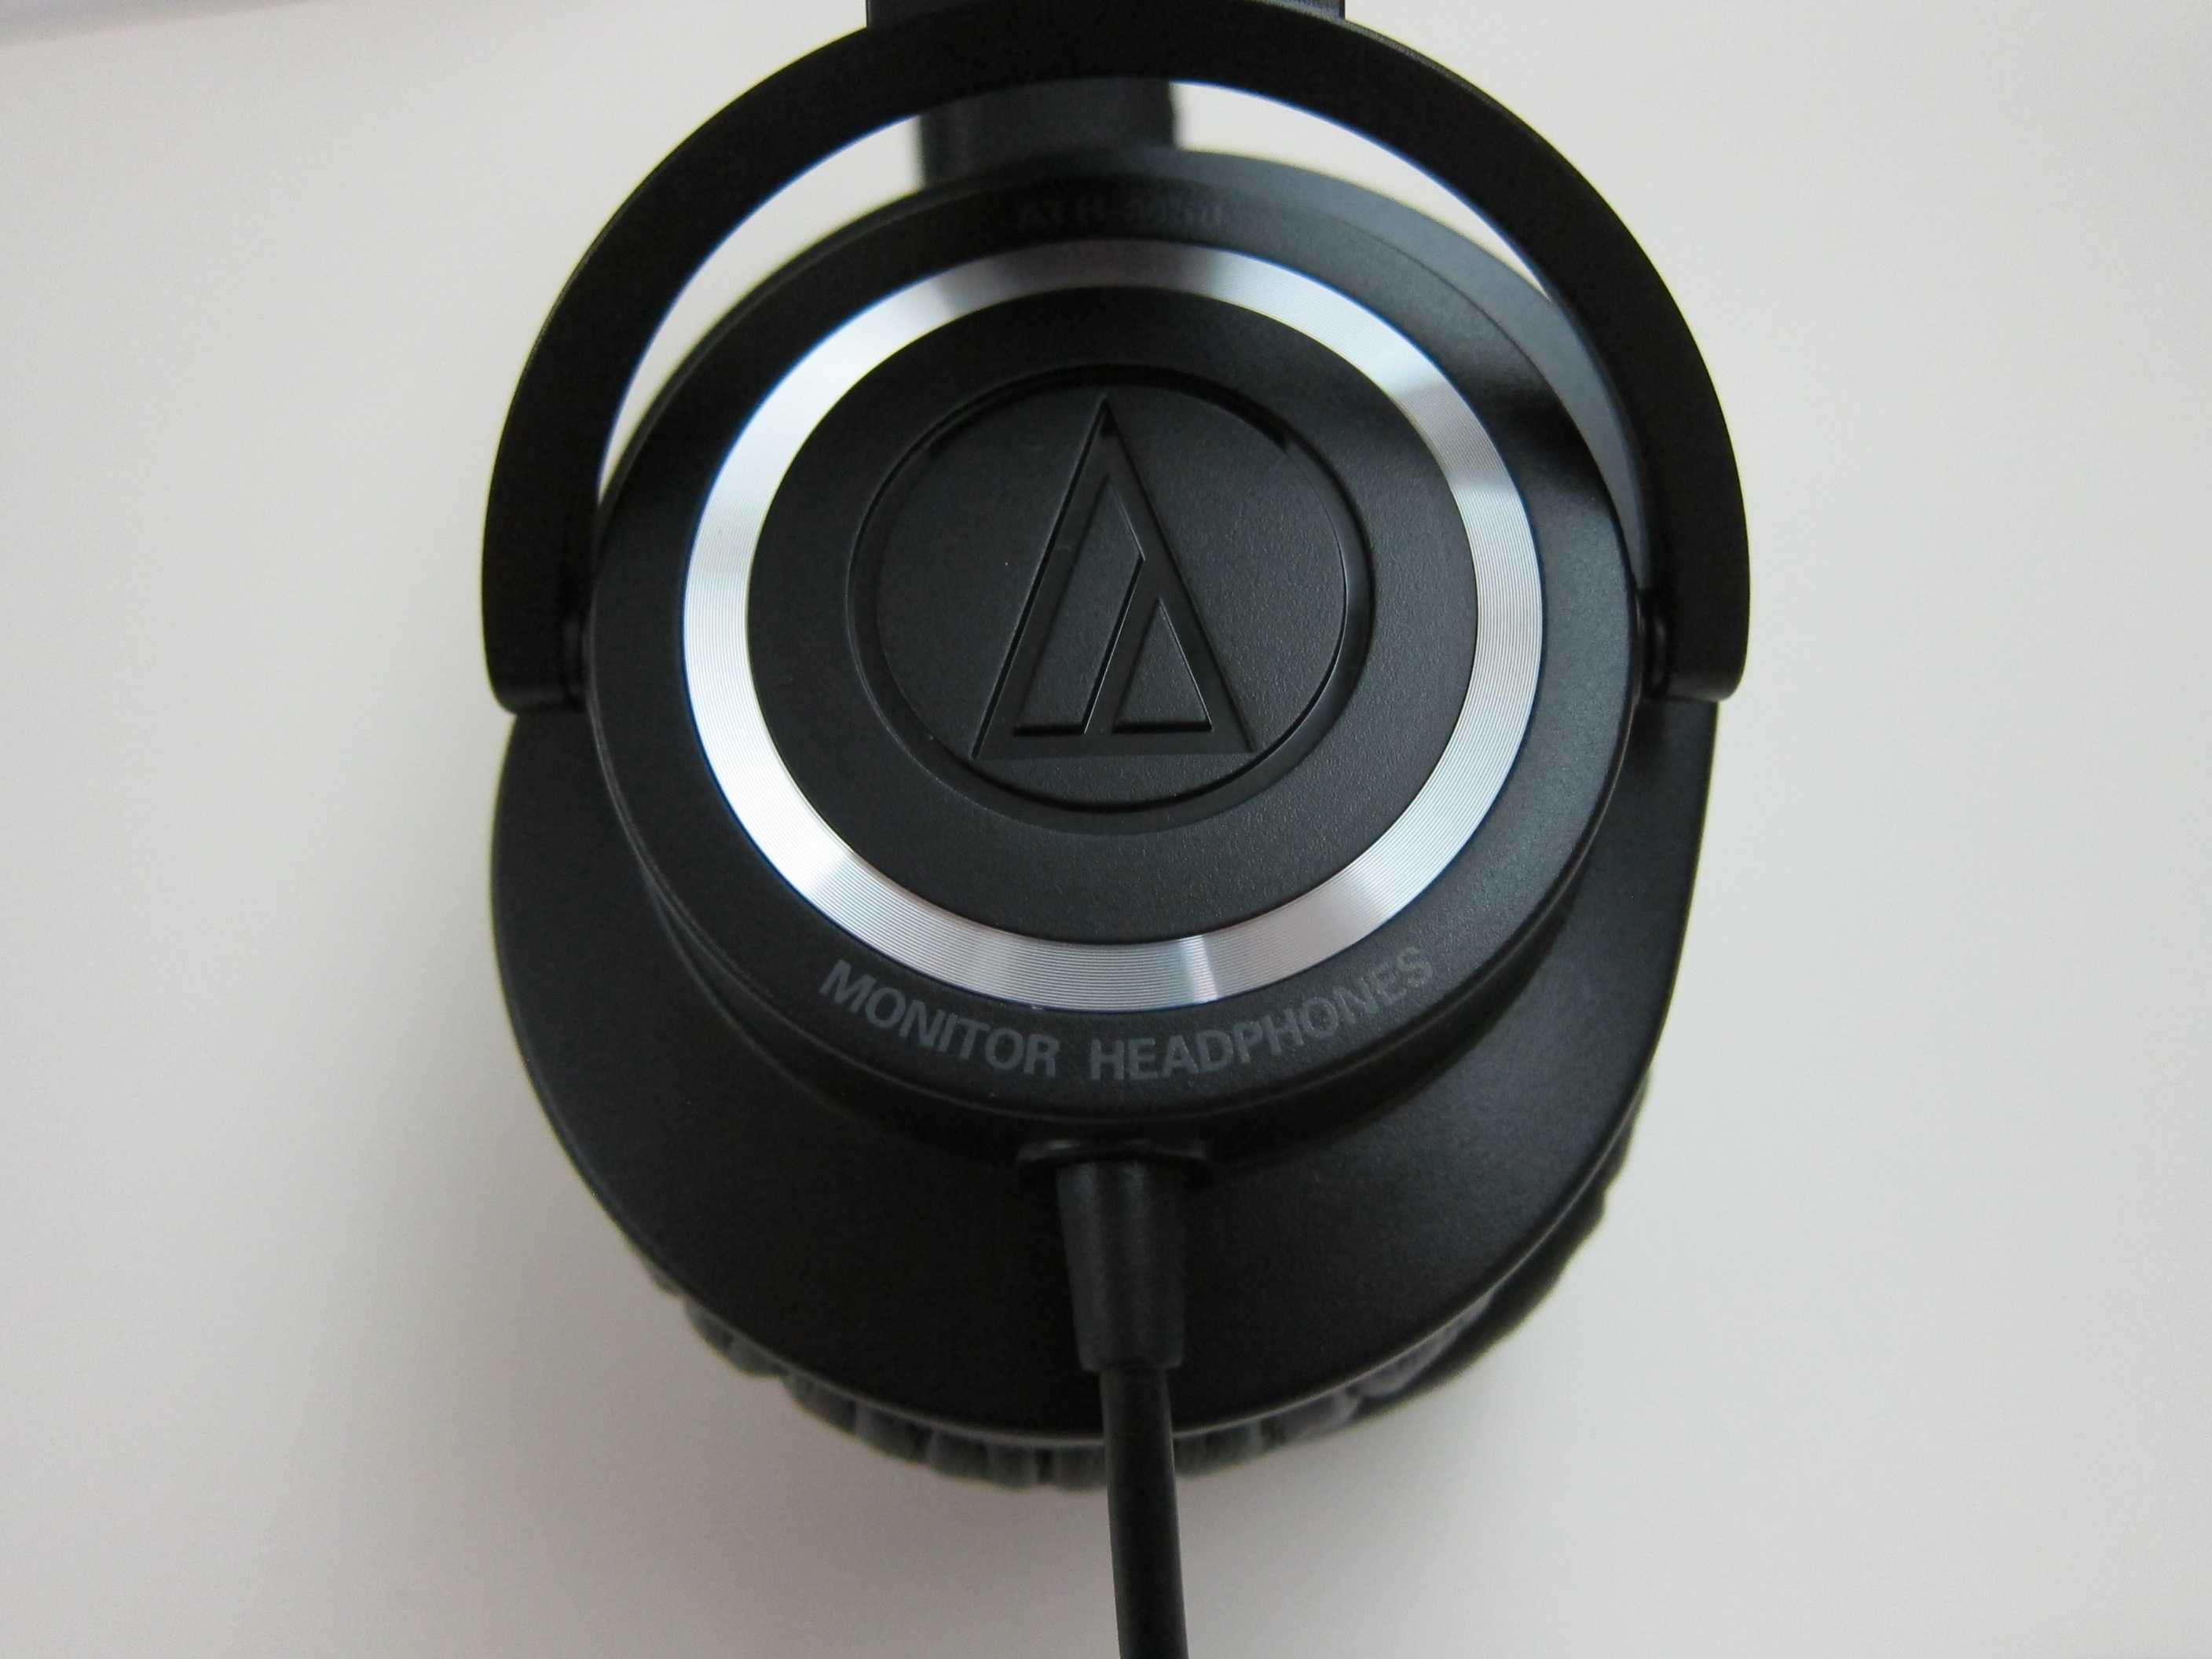 Audio-technica ath-ws70 купить по акционной цене , отзывы и обзоры.